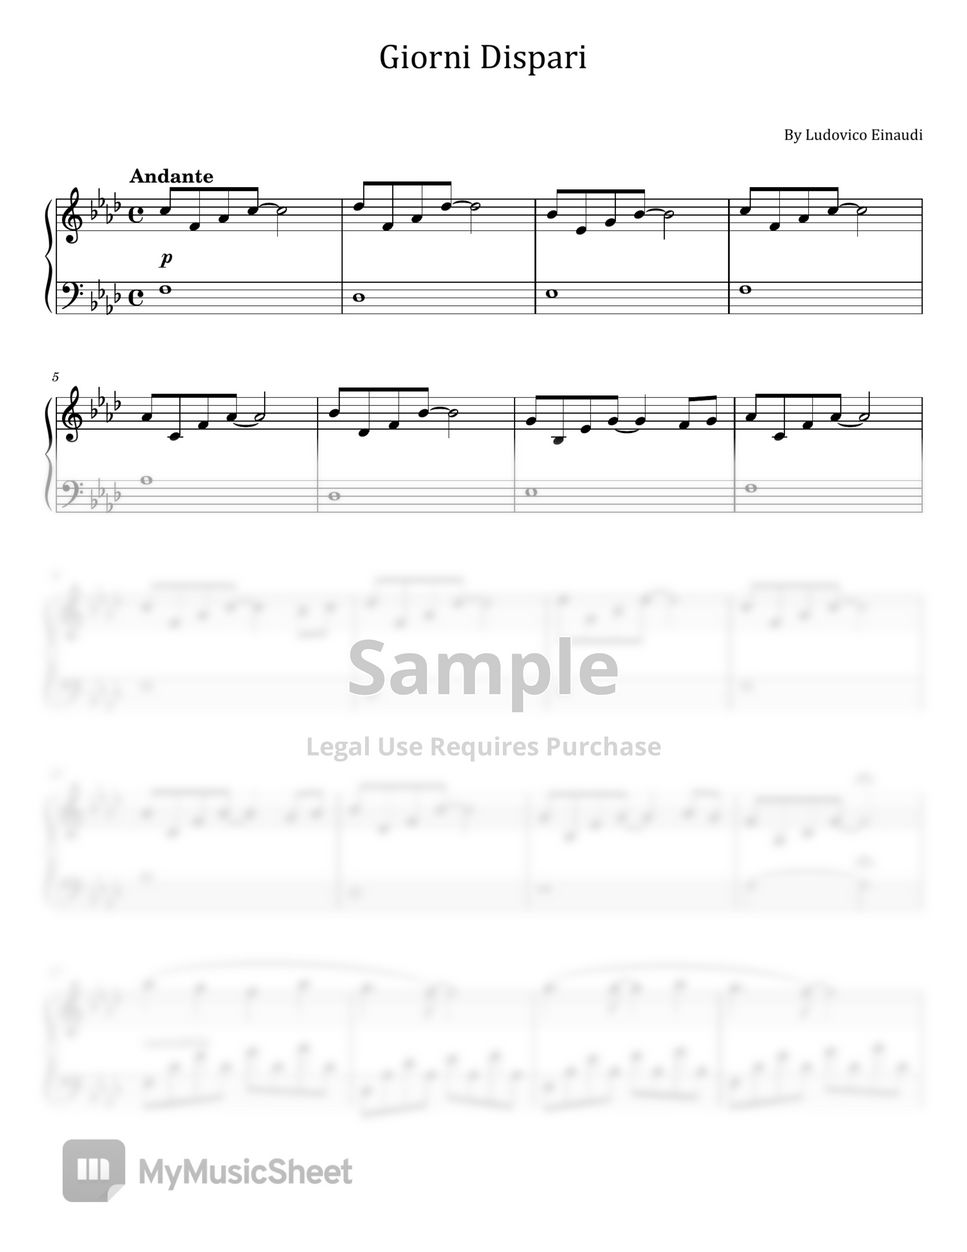 Ludovico Einaudi - Giorni Dispari (For Piano Solo) by poon